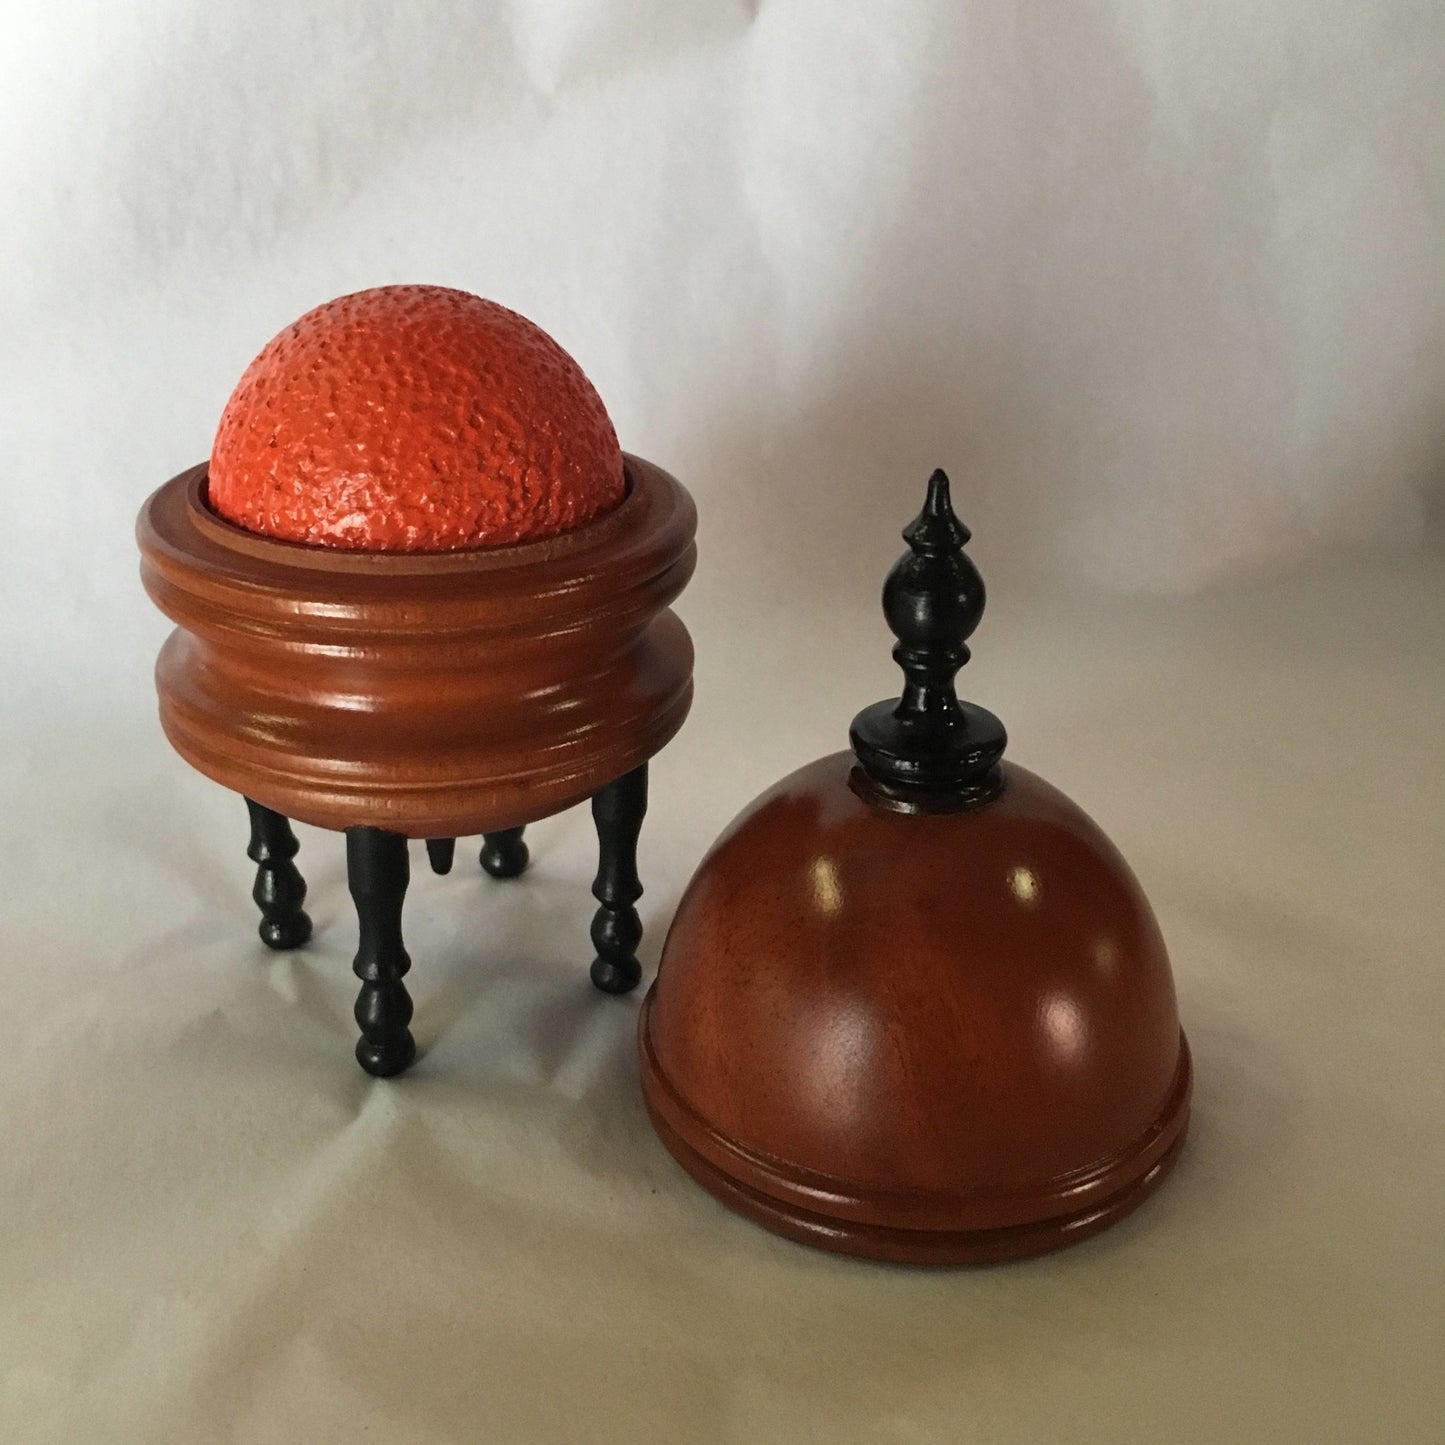 Orange Vase Tarbell-CW, Asian mahogany or Ebony